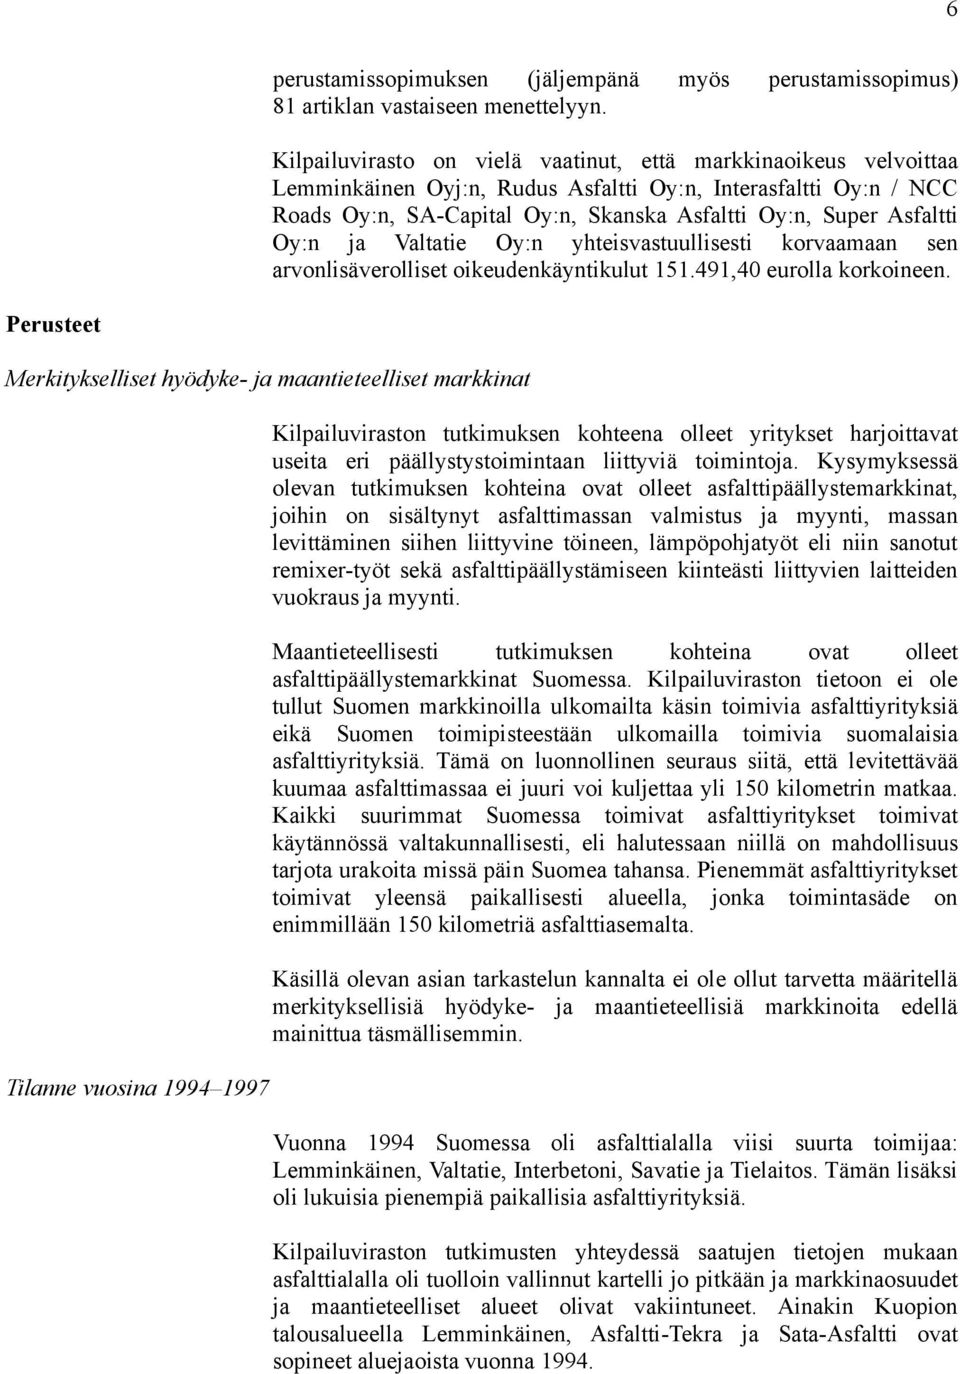 Oy:n ja Valtatie Oy:n yhteisvastuullisesti korvaamaan sen arvonlisäverolliset oikeudenkäyntikulut 151.491,40 eurolla korkoineen.